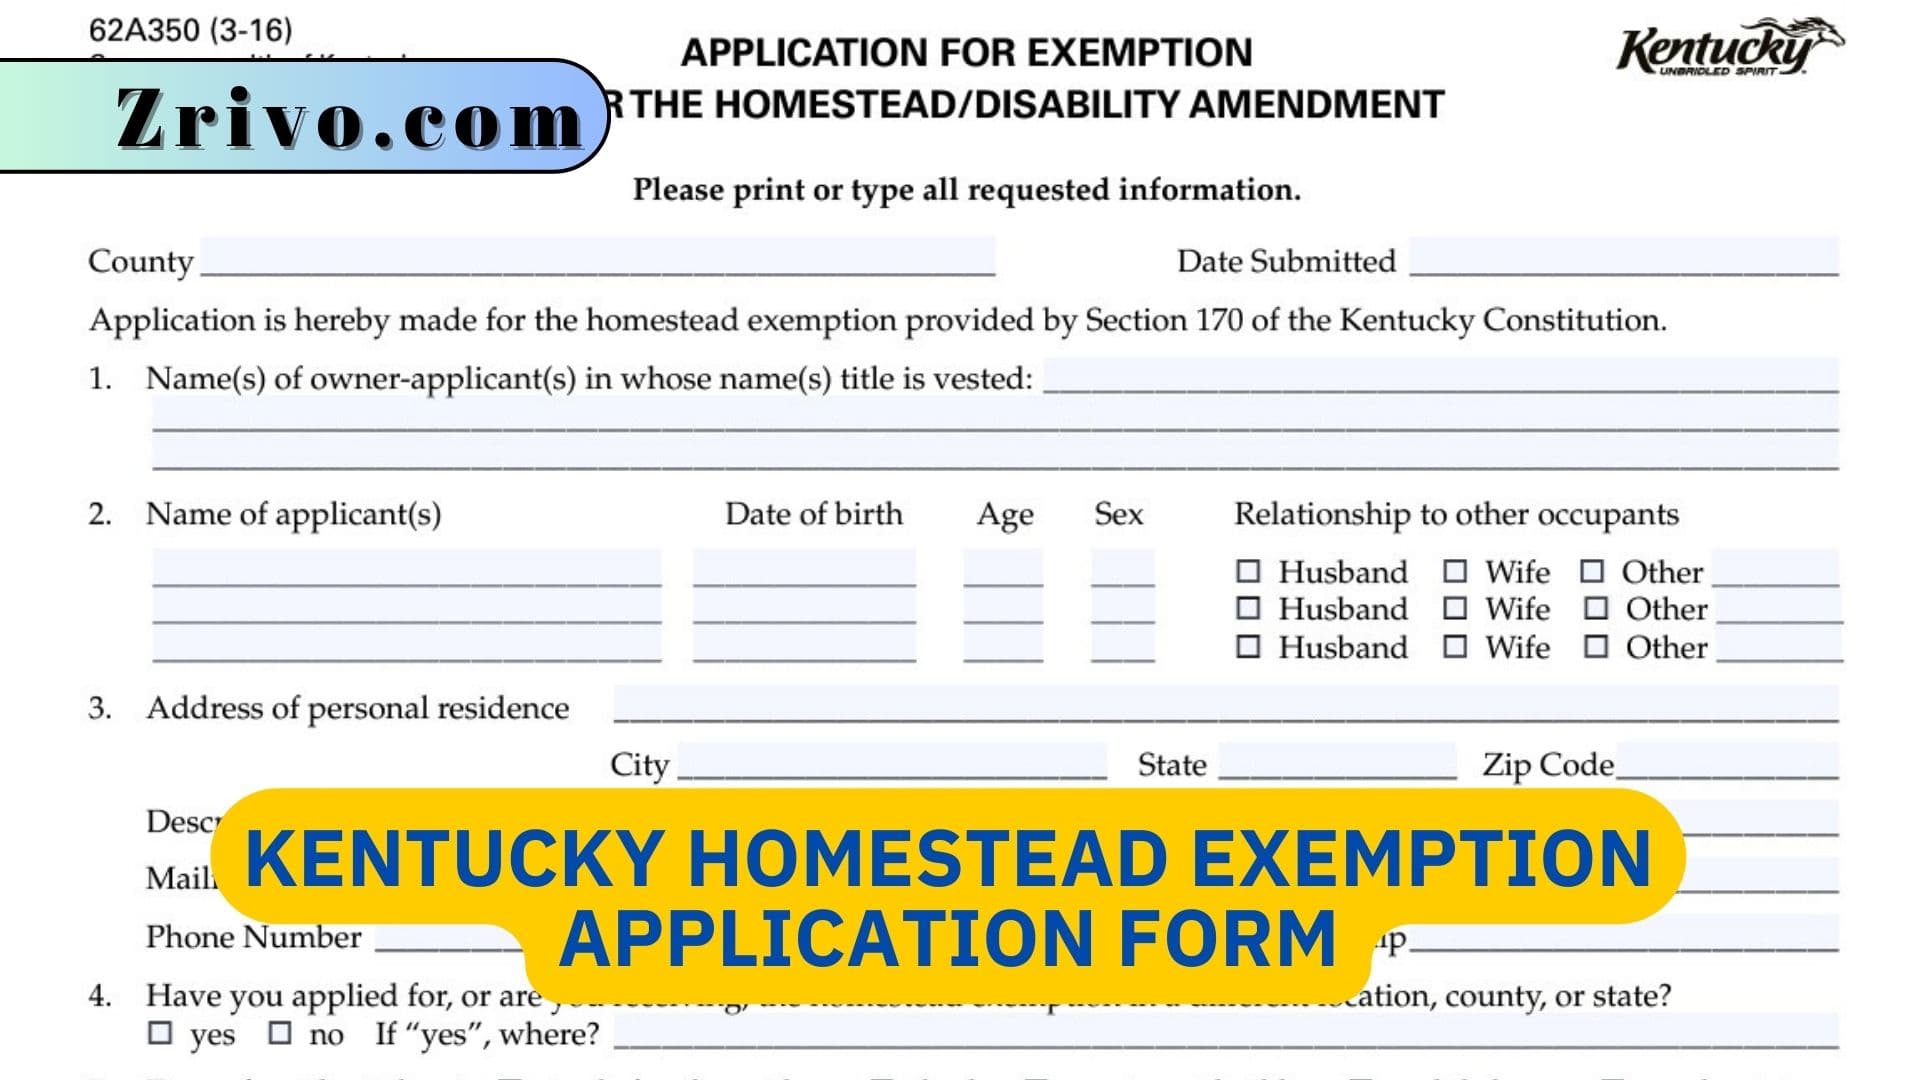 Kentucky Homestead Exemption Application Form